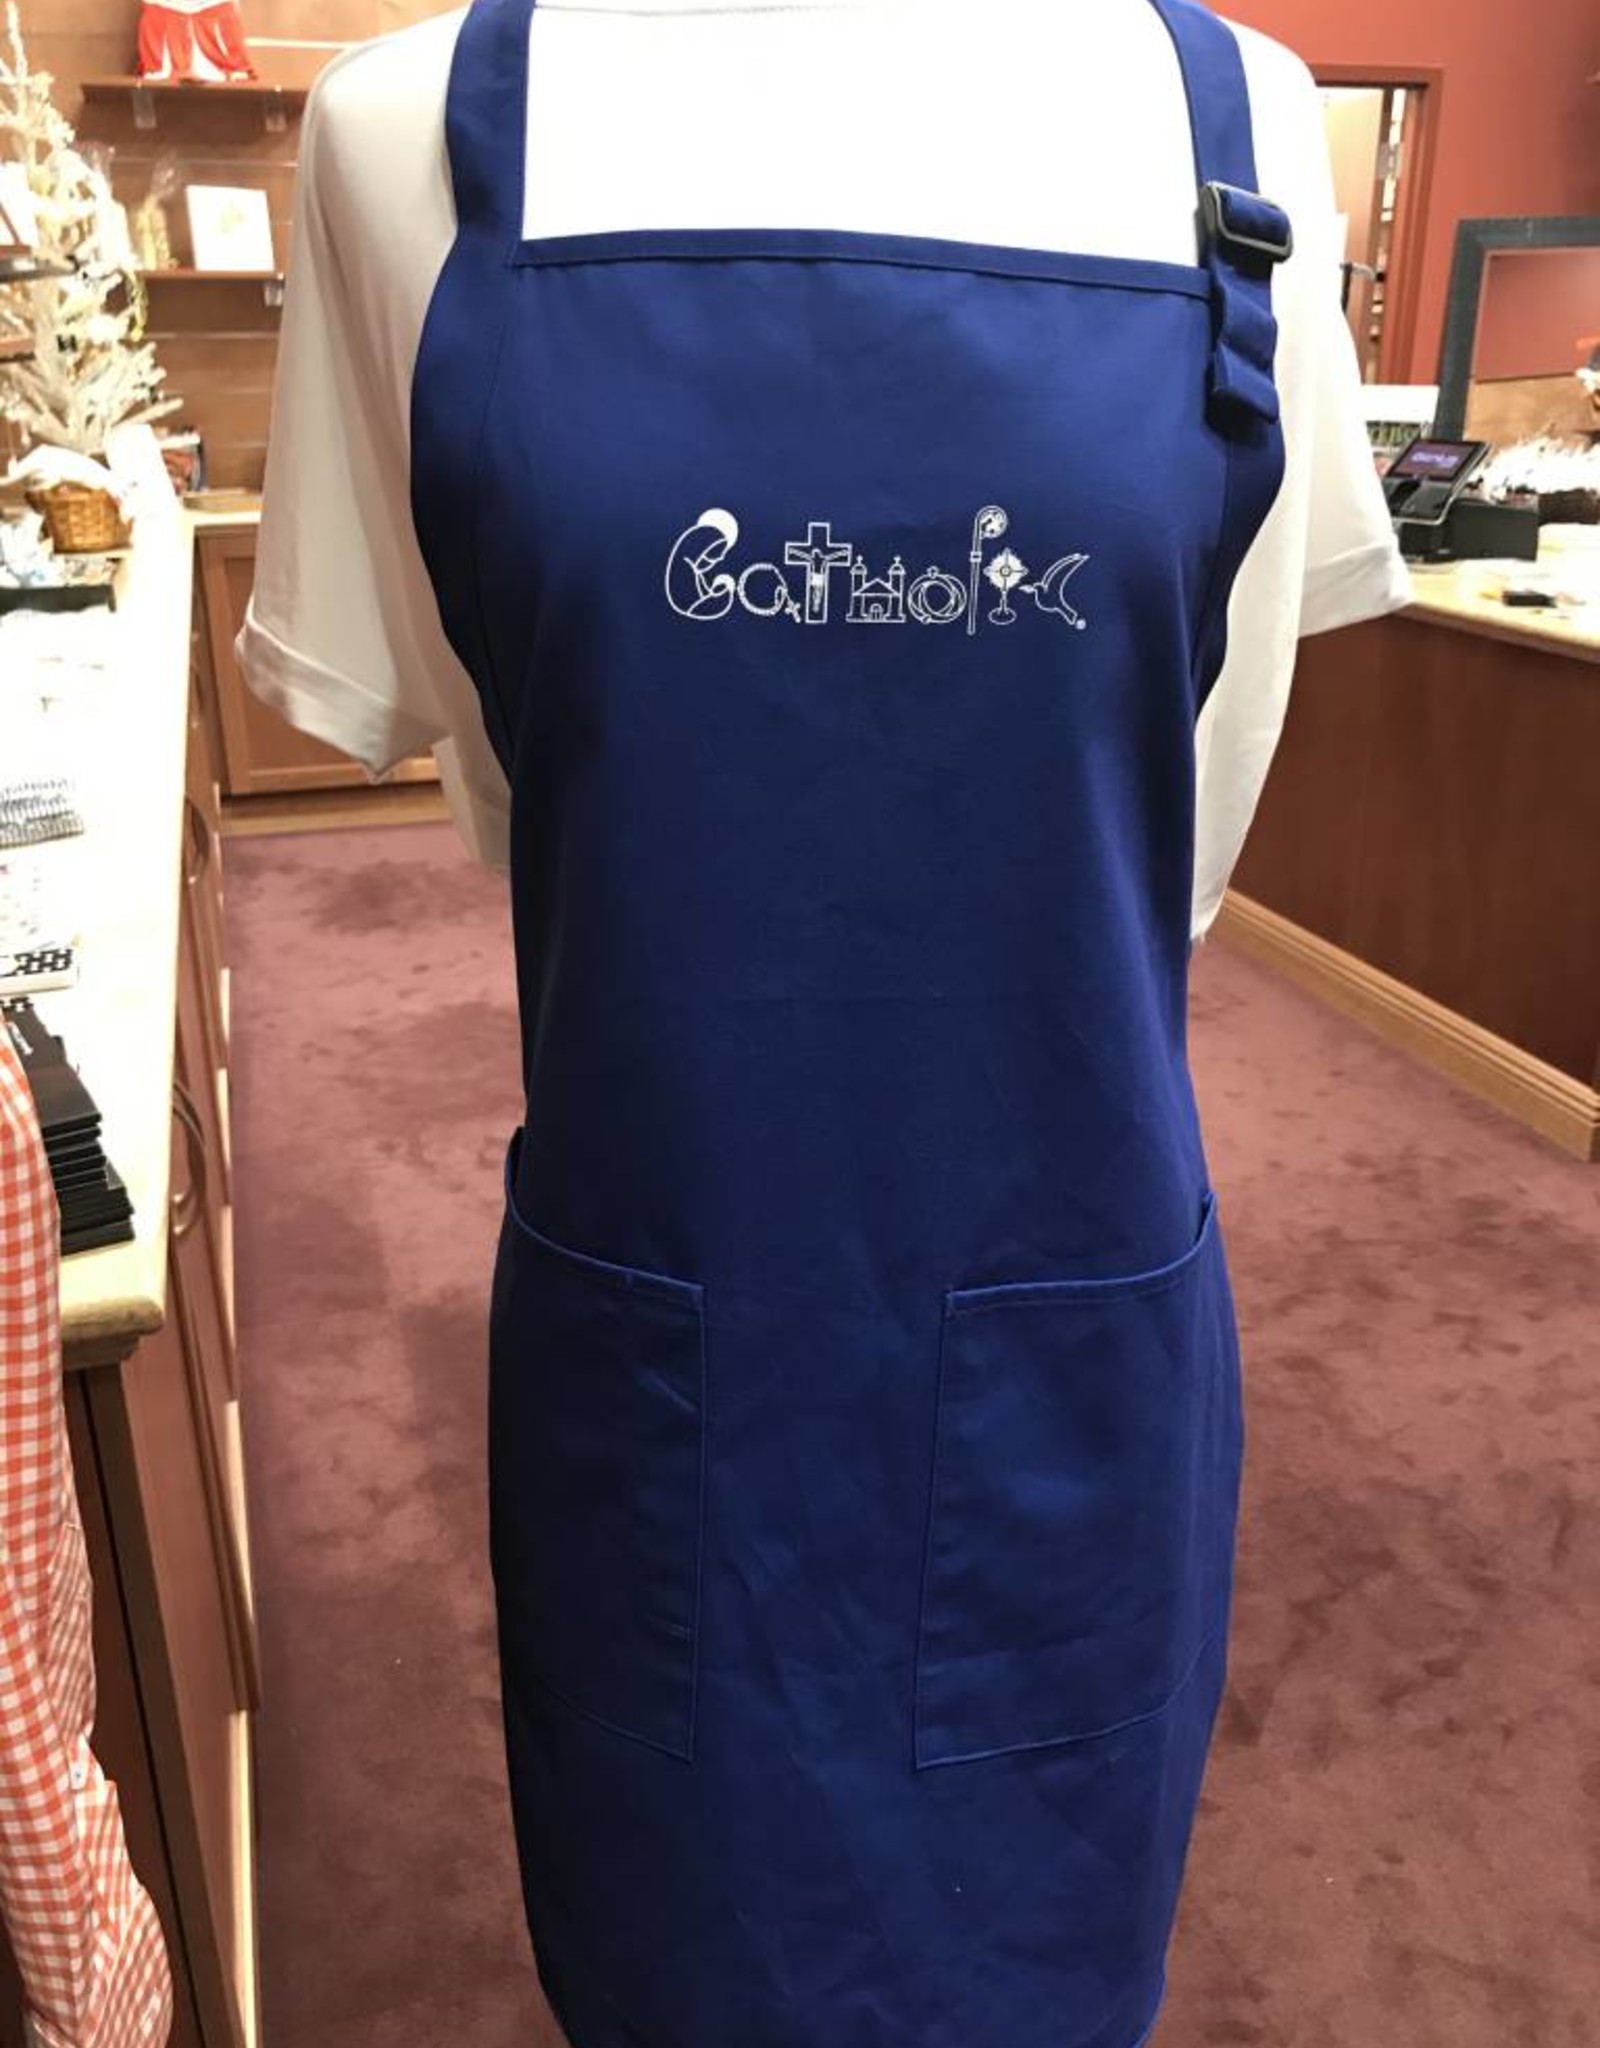 Catholic apron